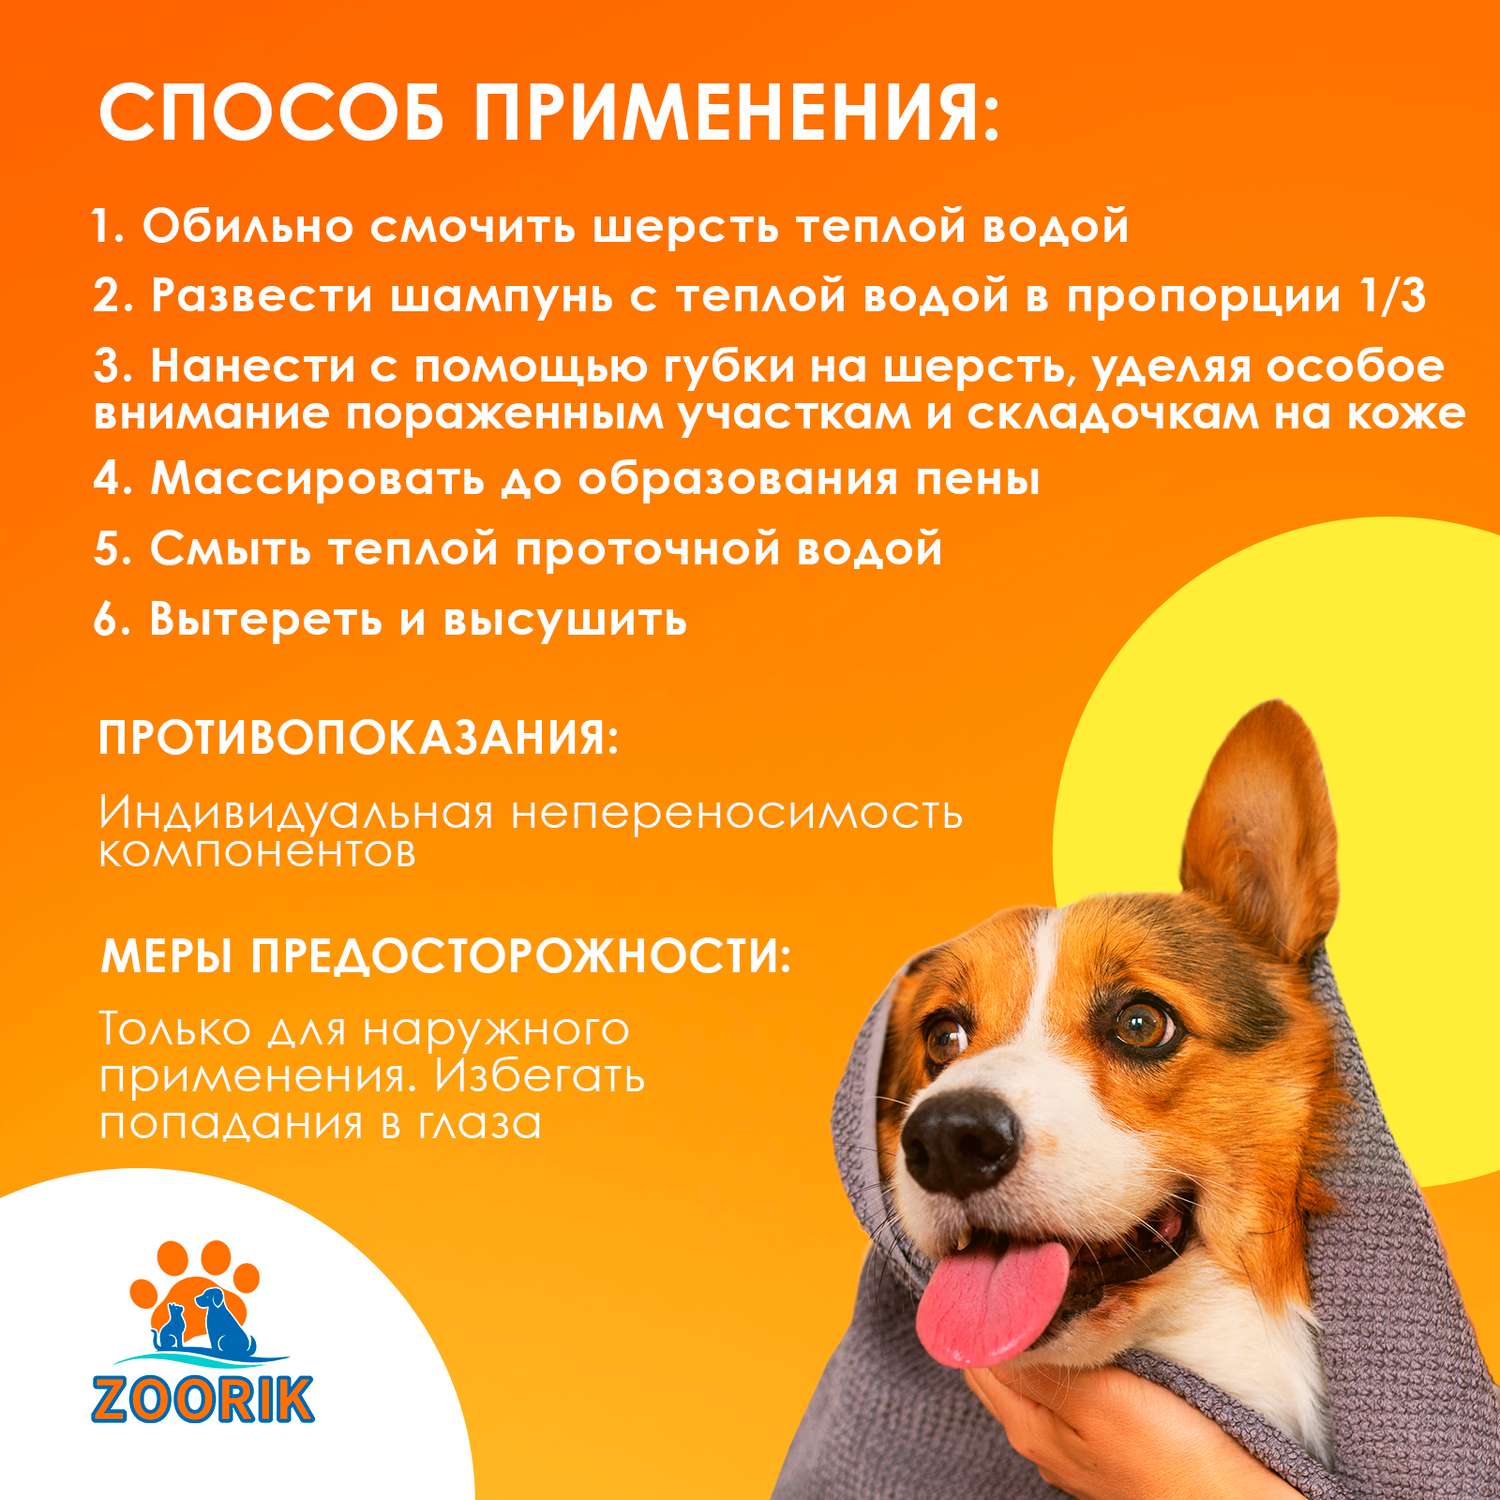 Шампунь для собак и кошек ZOORIK антибактериальный 500 мл - фото 8